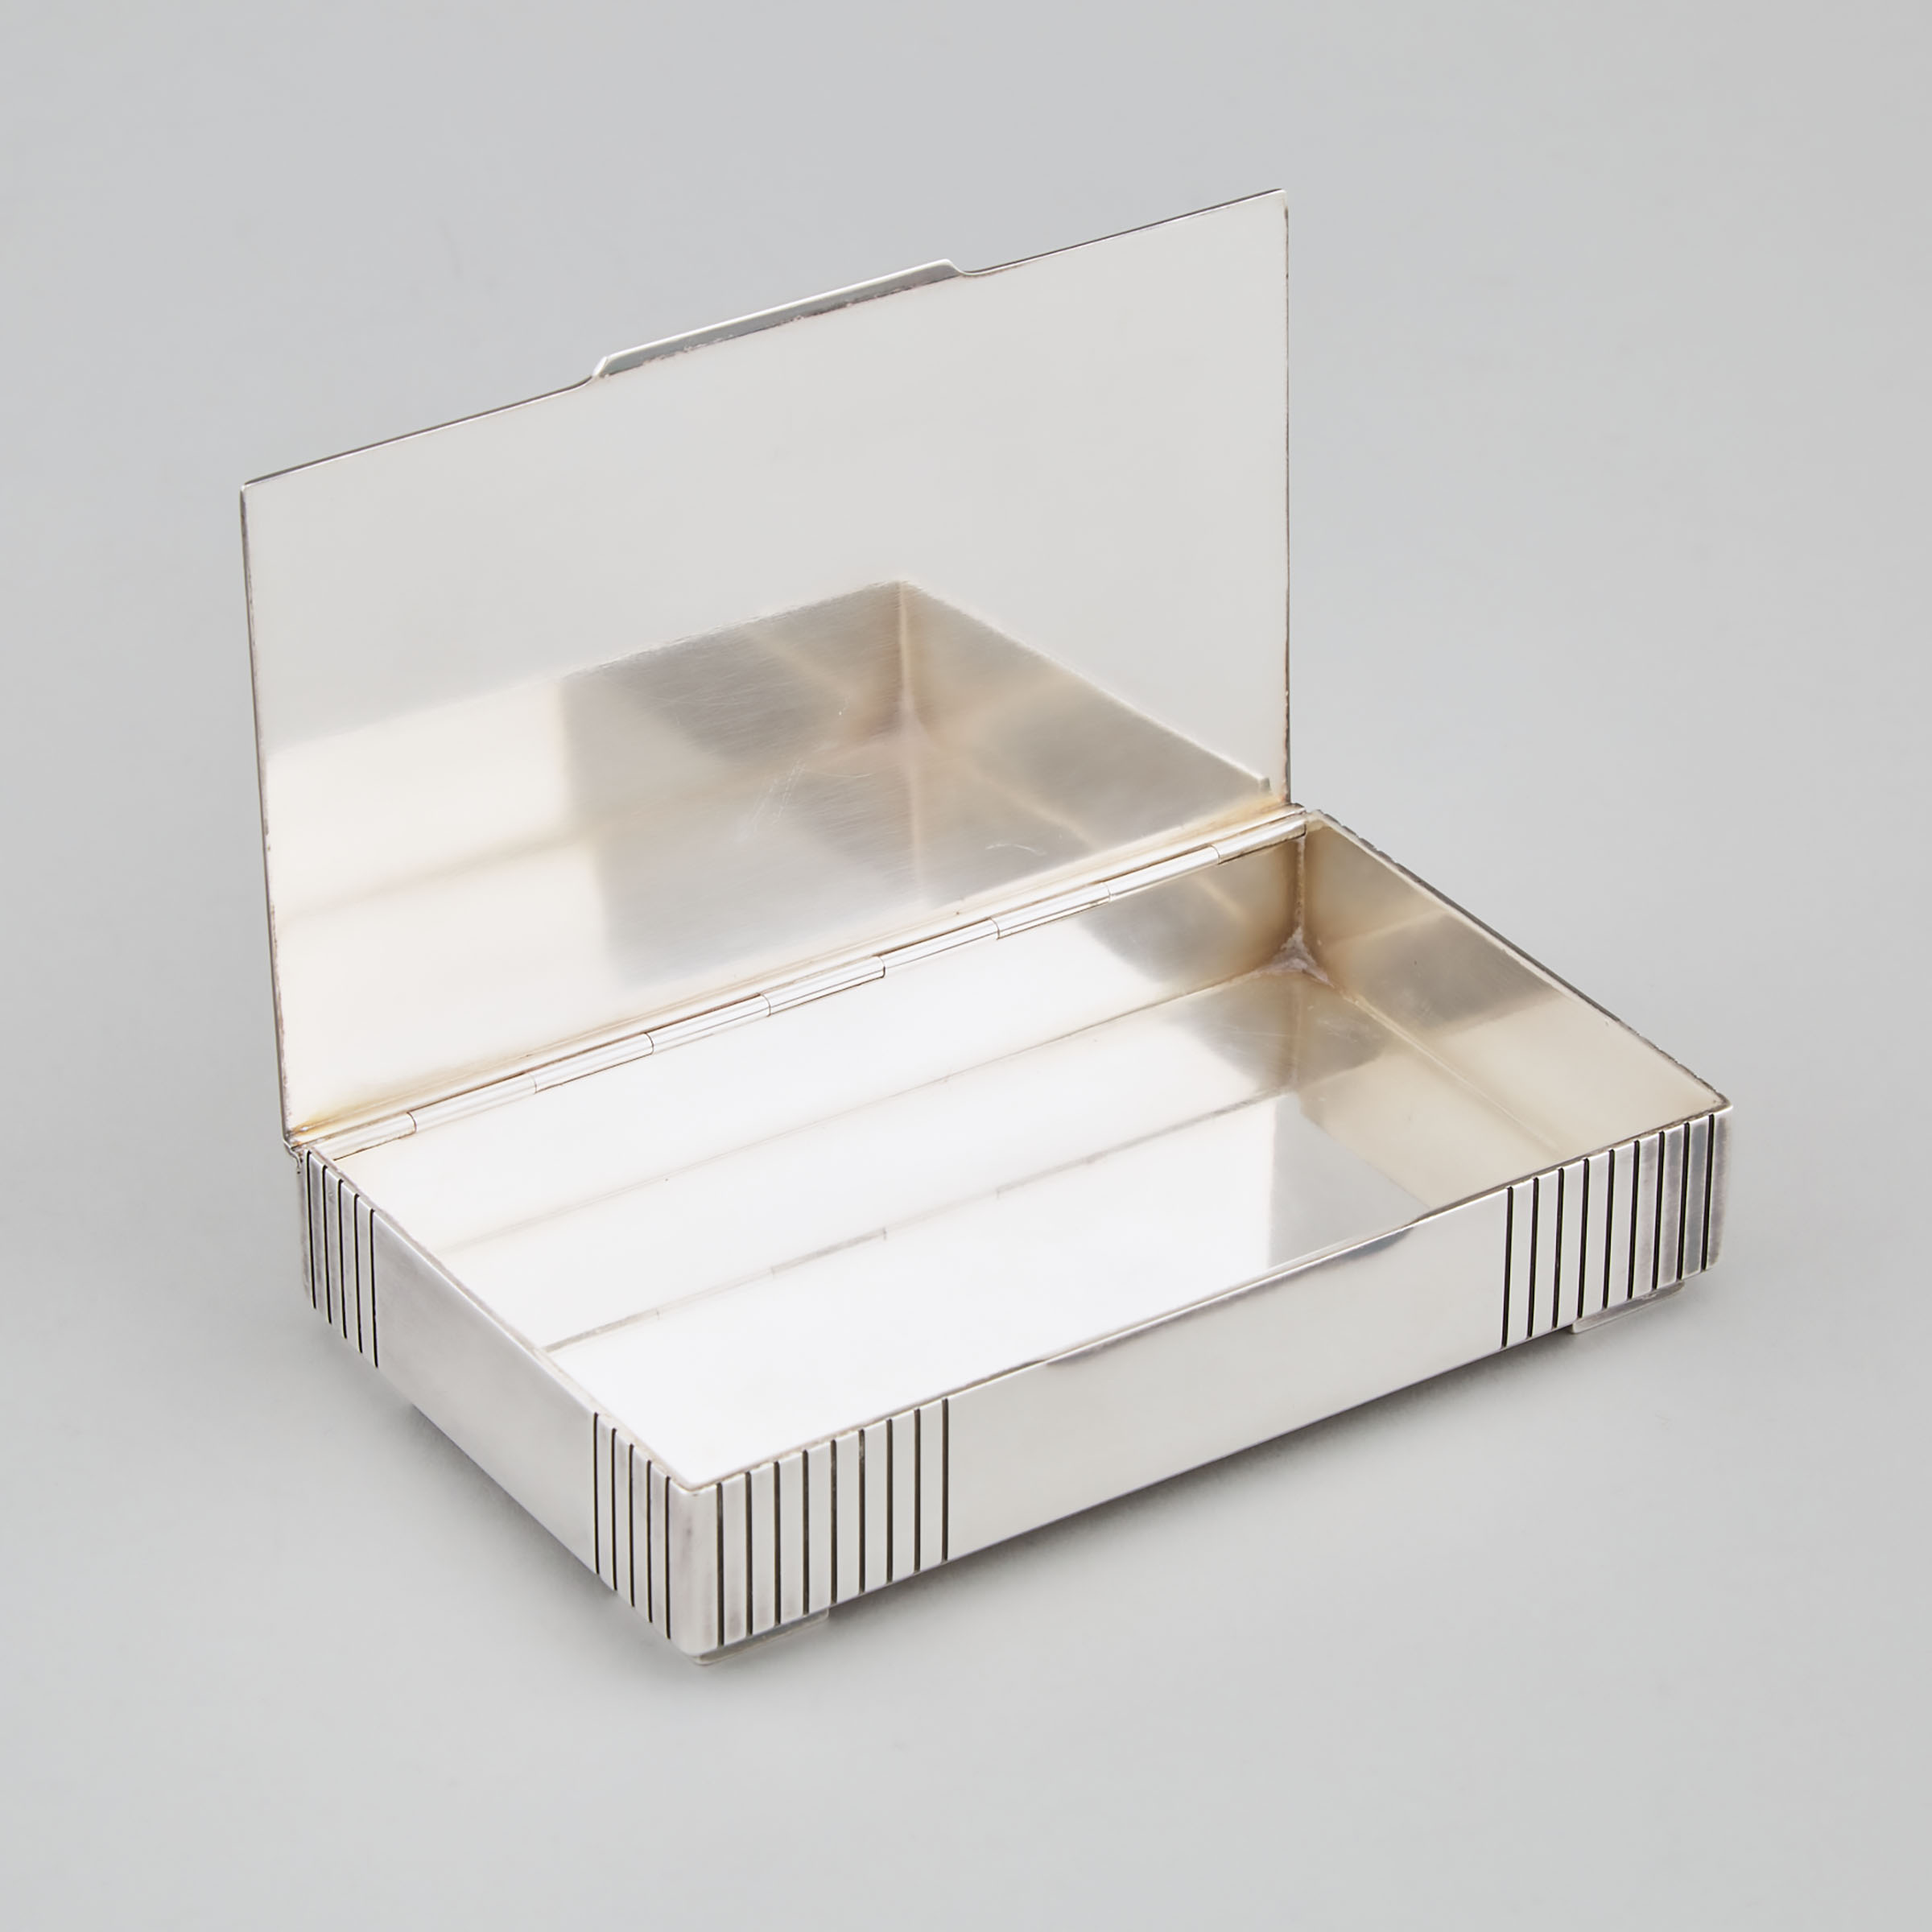 Danish Silver Rectangular Box, #843, Jørgen Jensen for Georg Jensen, Copenhagen, post-1945